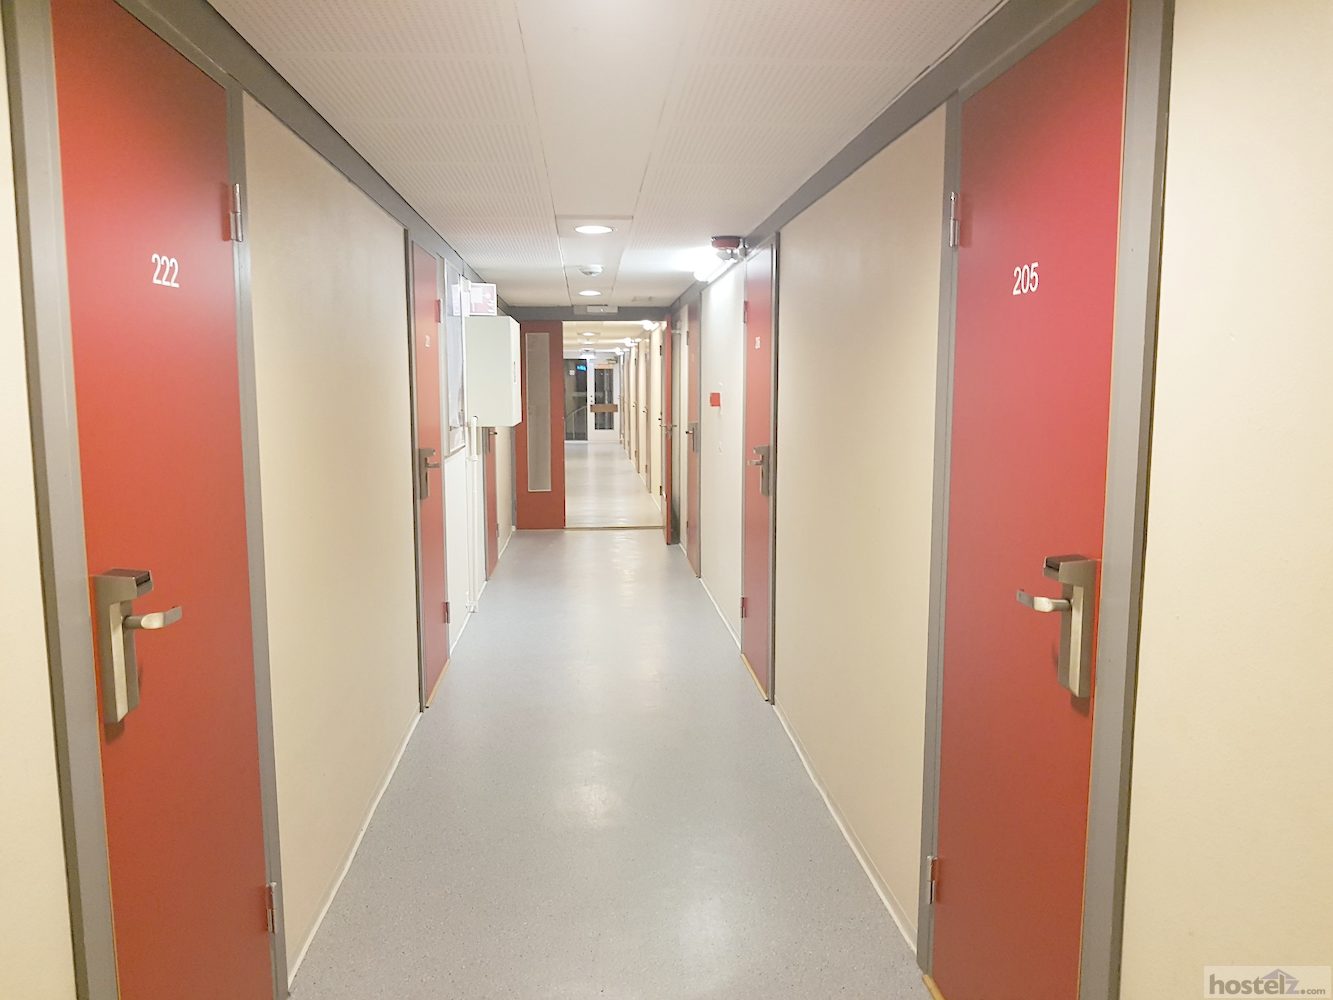 Hallway to rooms 